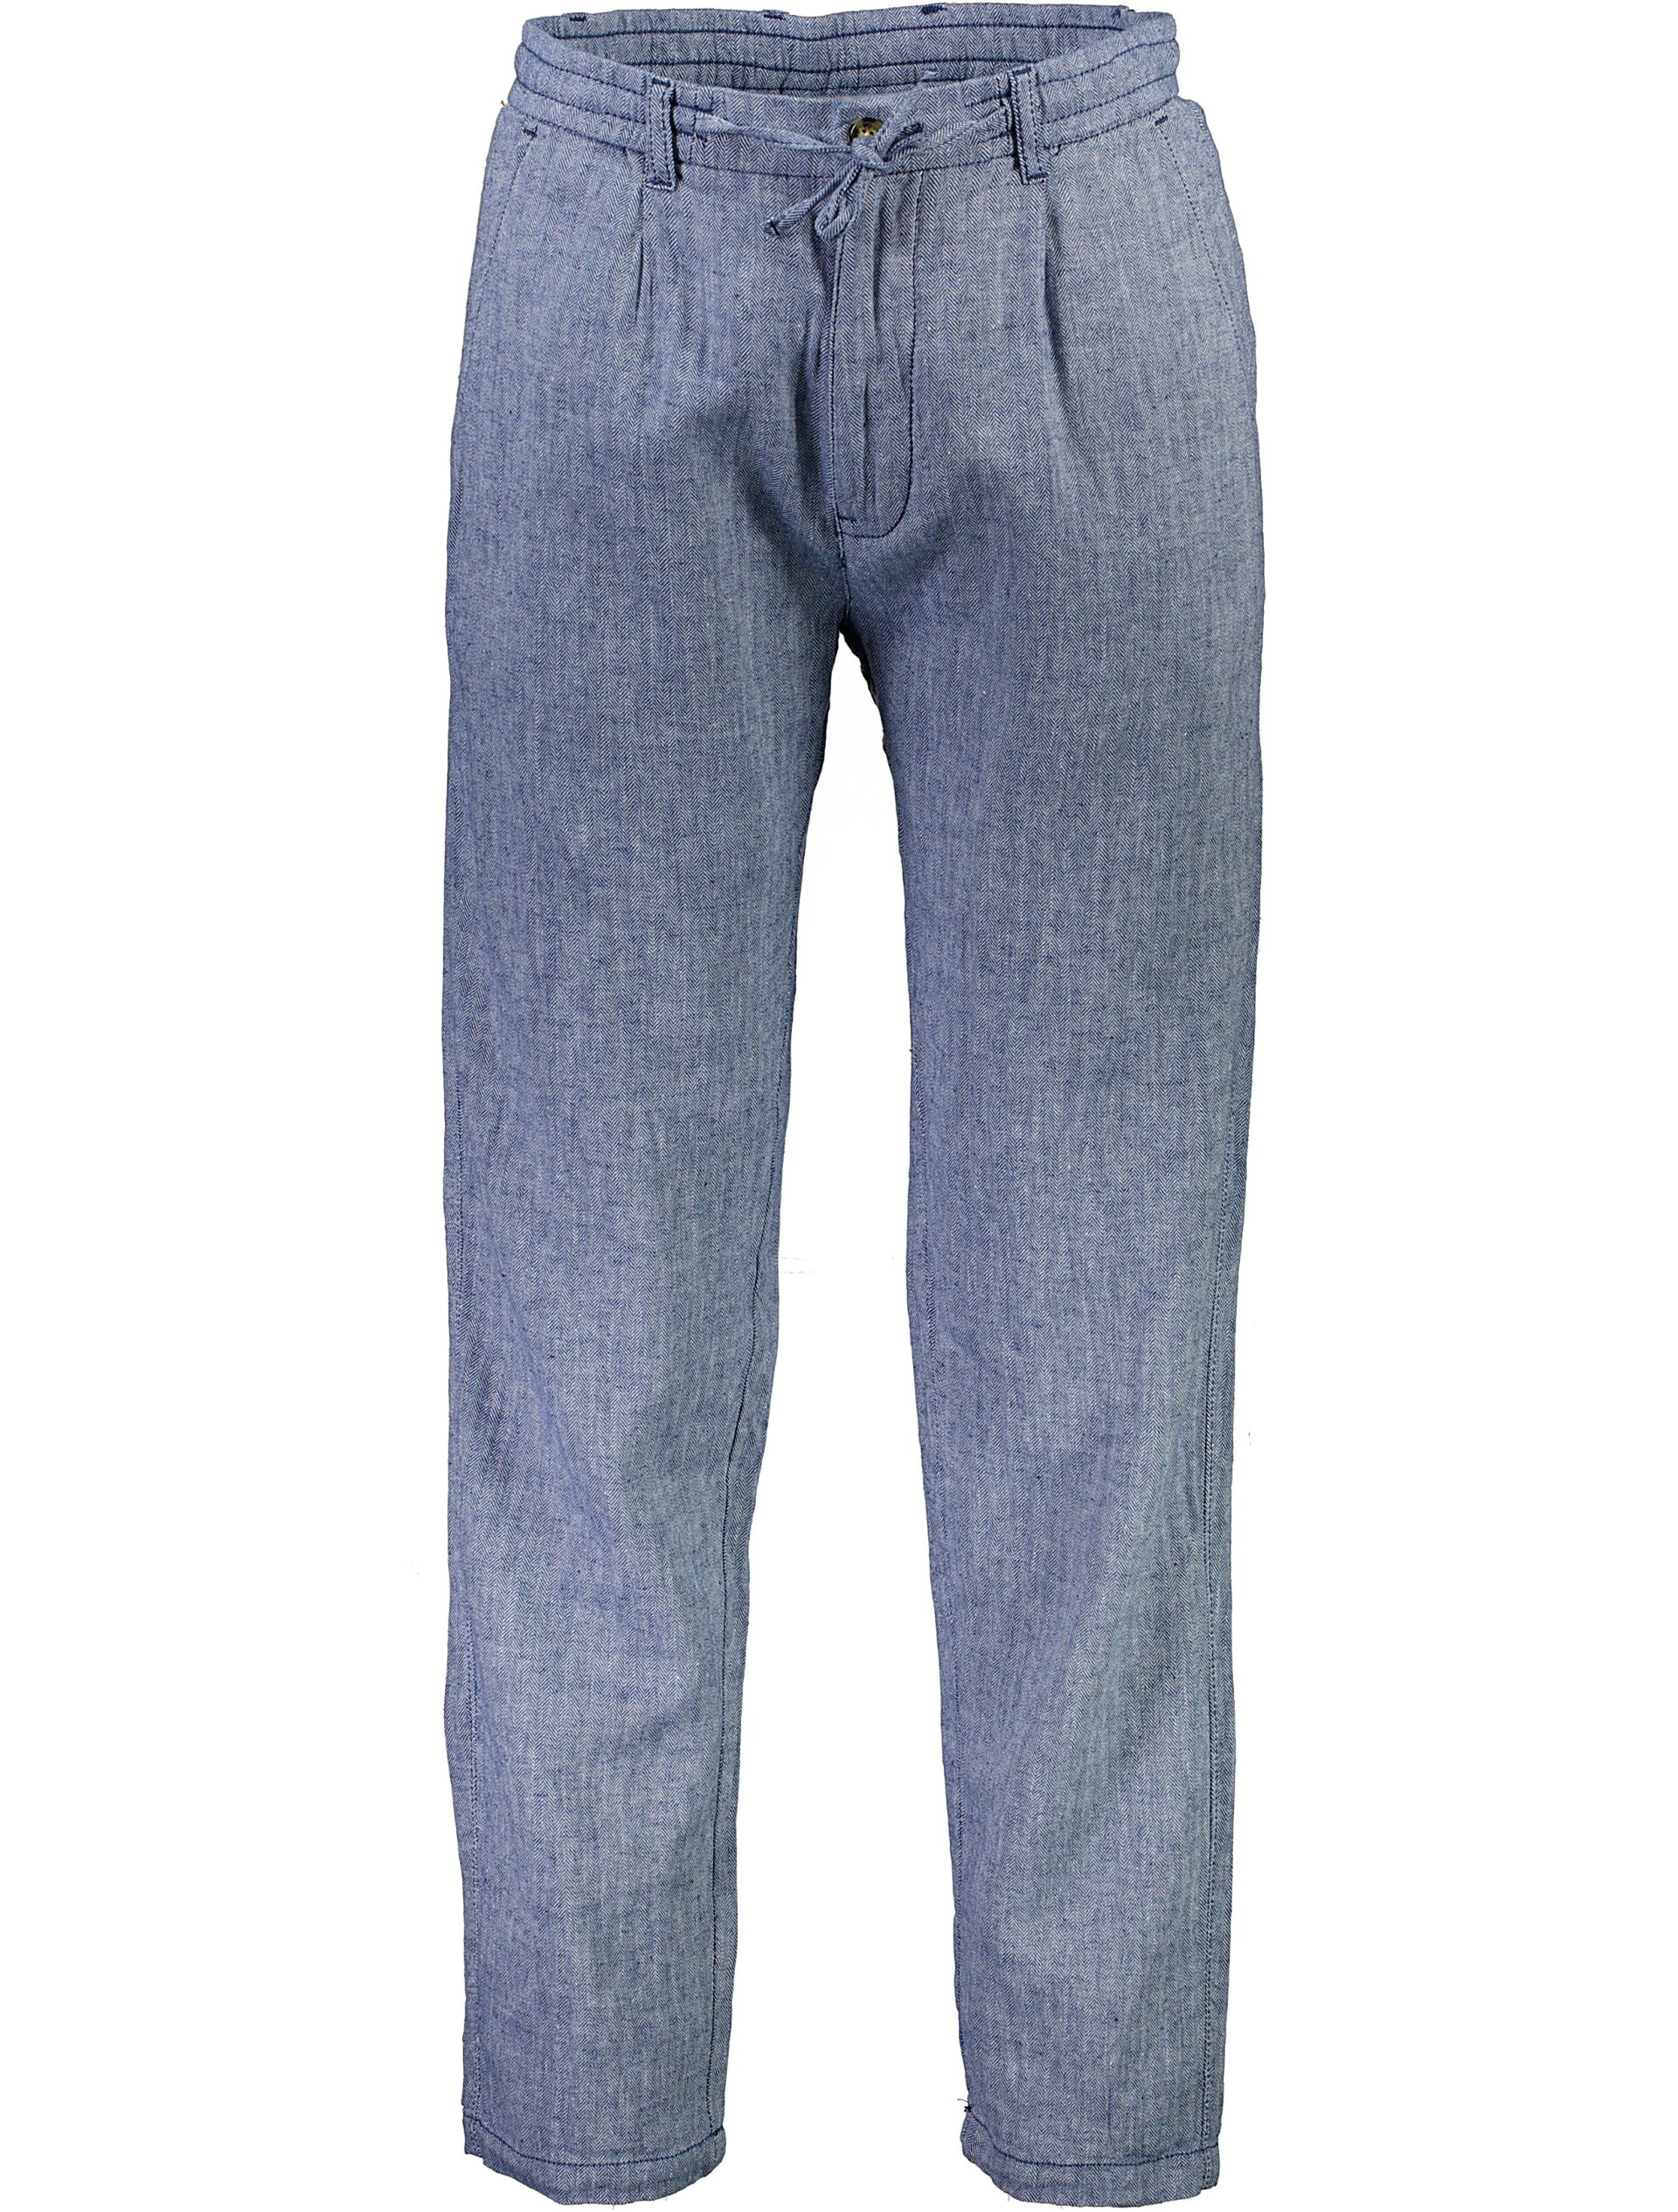 Linen pants 30-003020